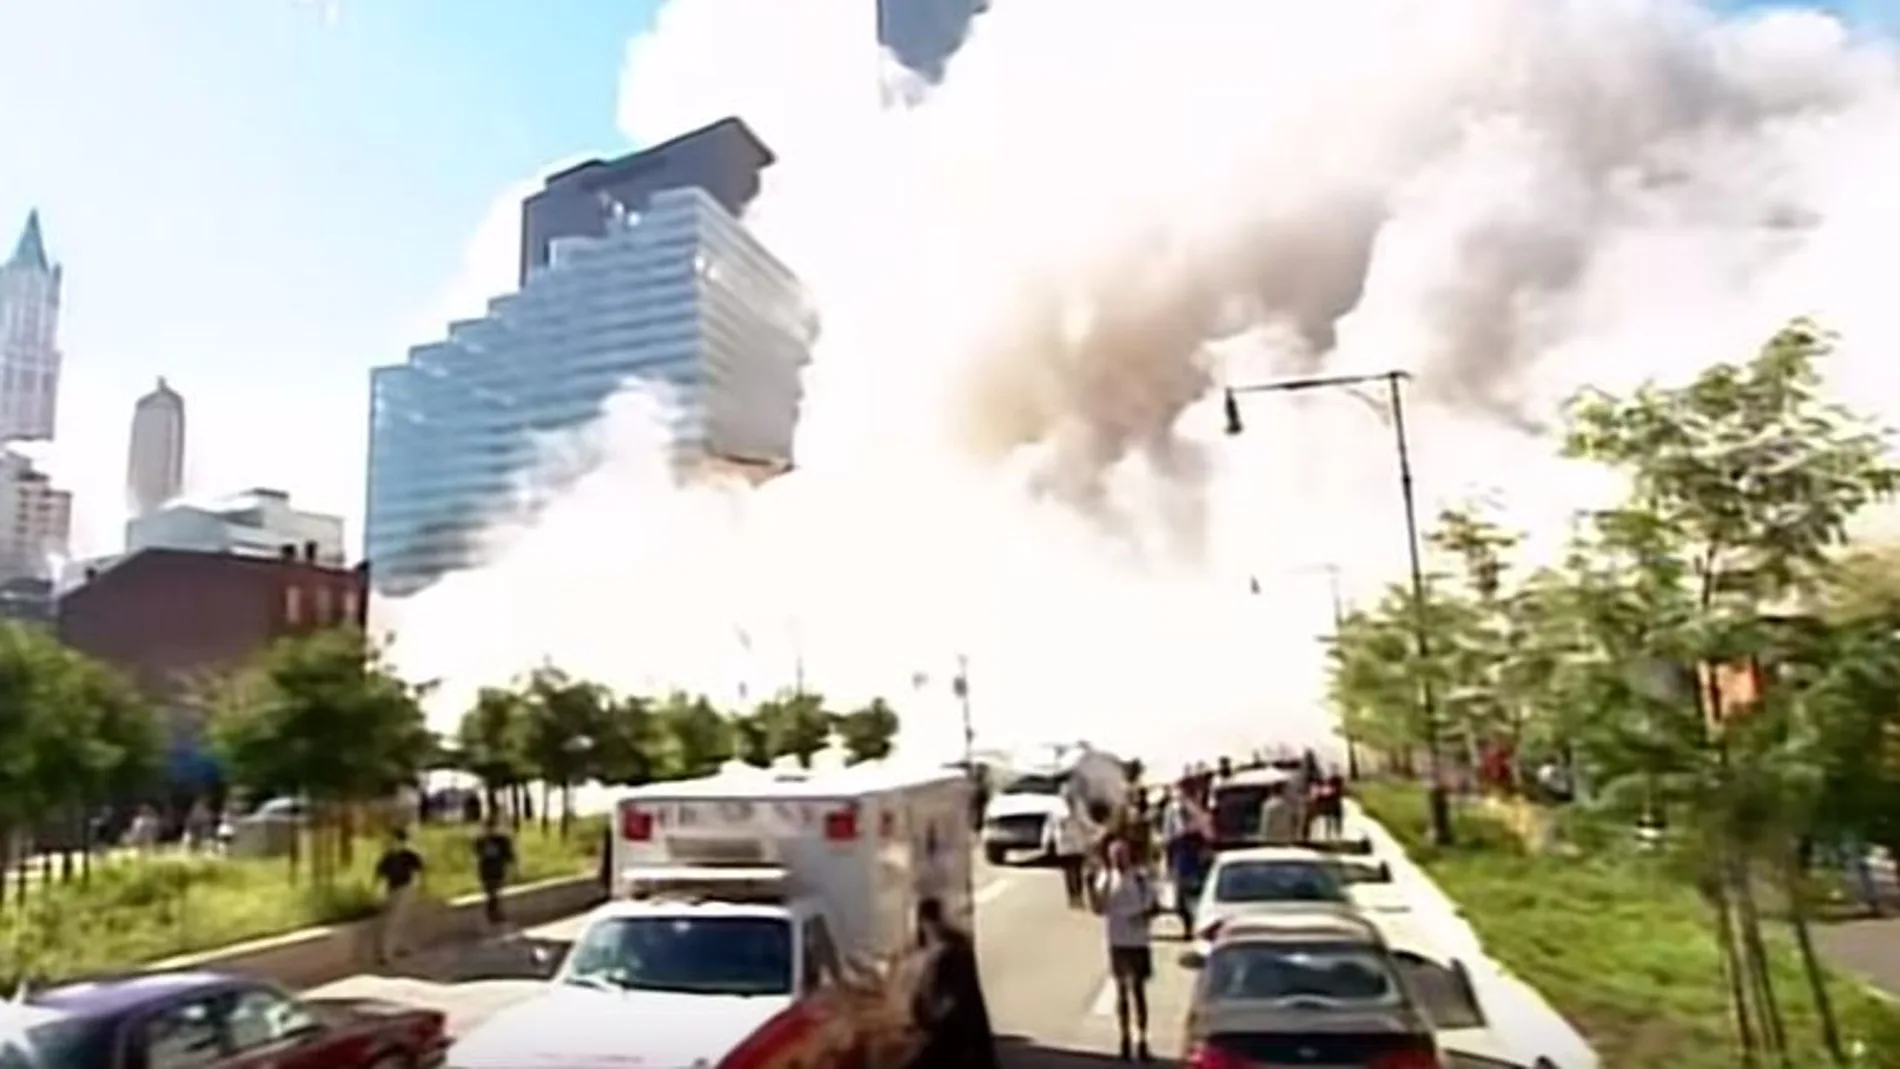 Vídeo del 11-S grabado por de Mark Laganga. (YouTube)